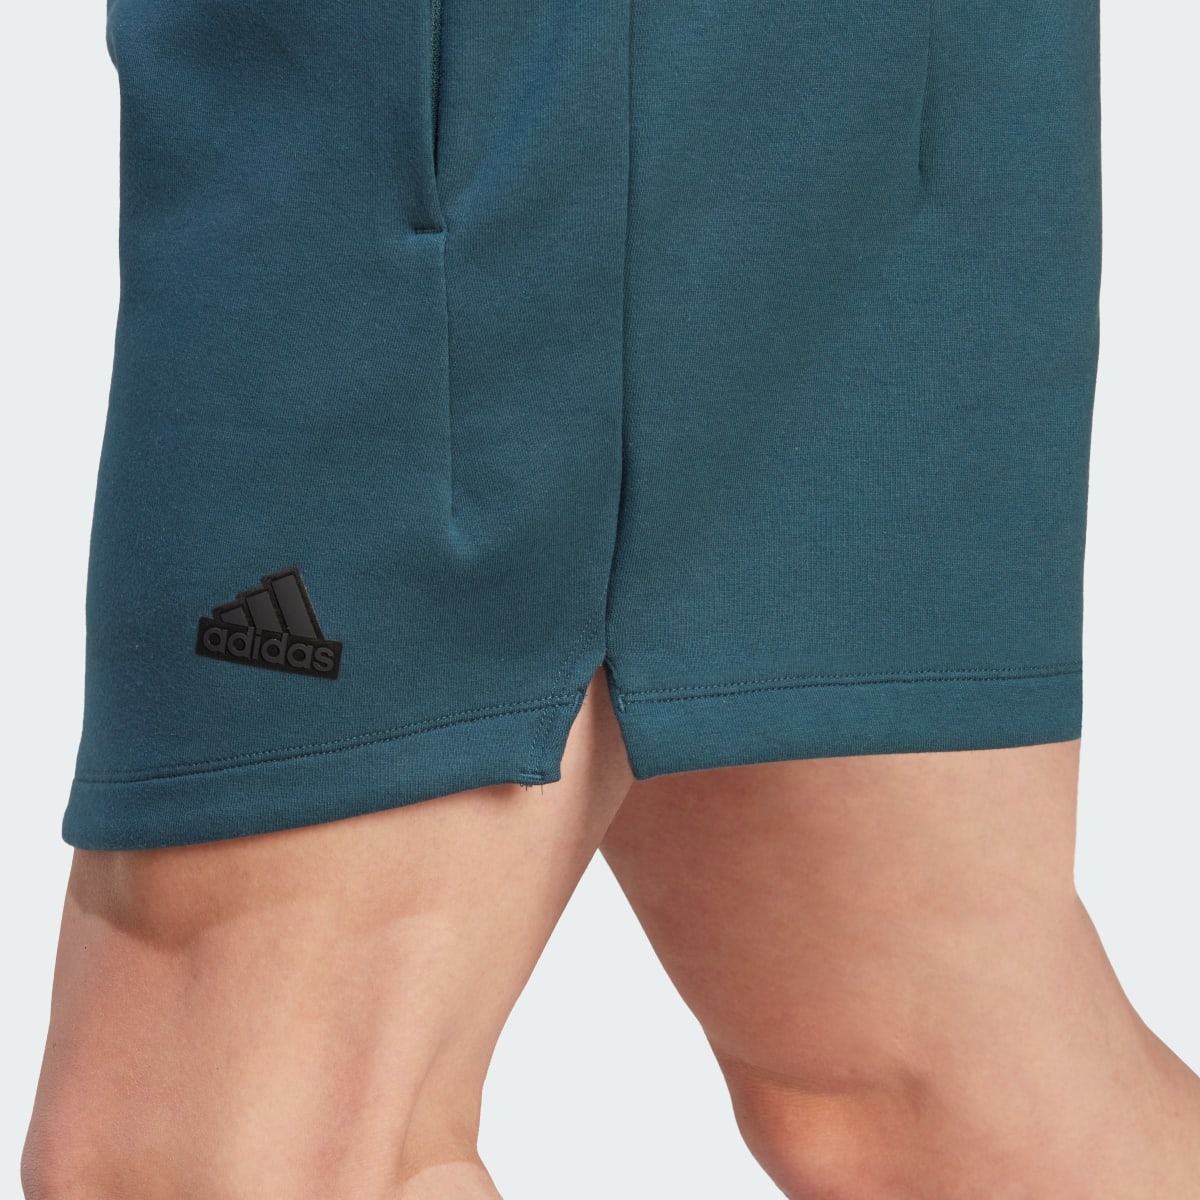 Adidas Premium Z.N.E. Shorts. 6